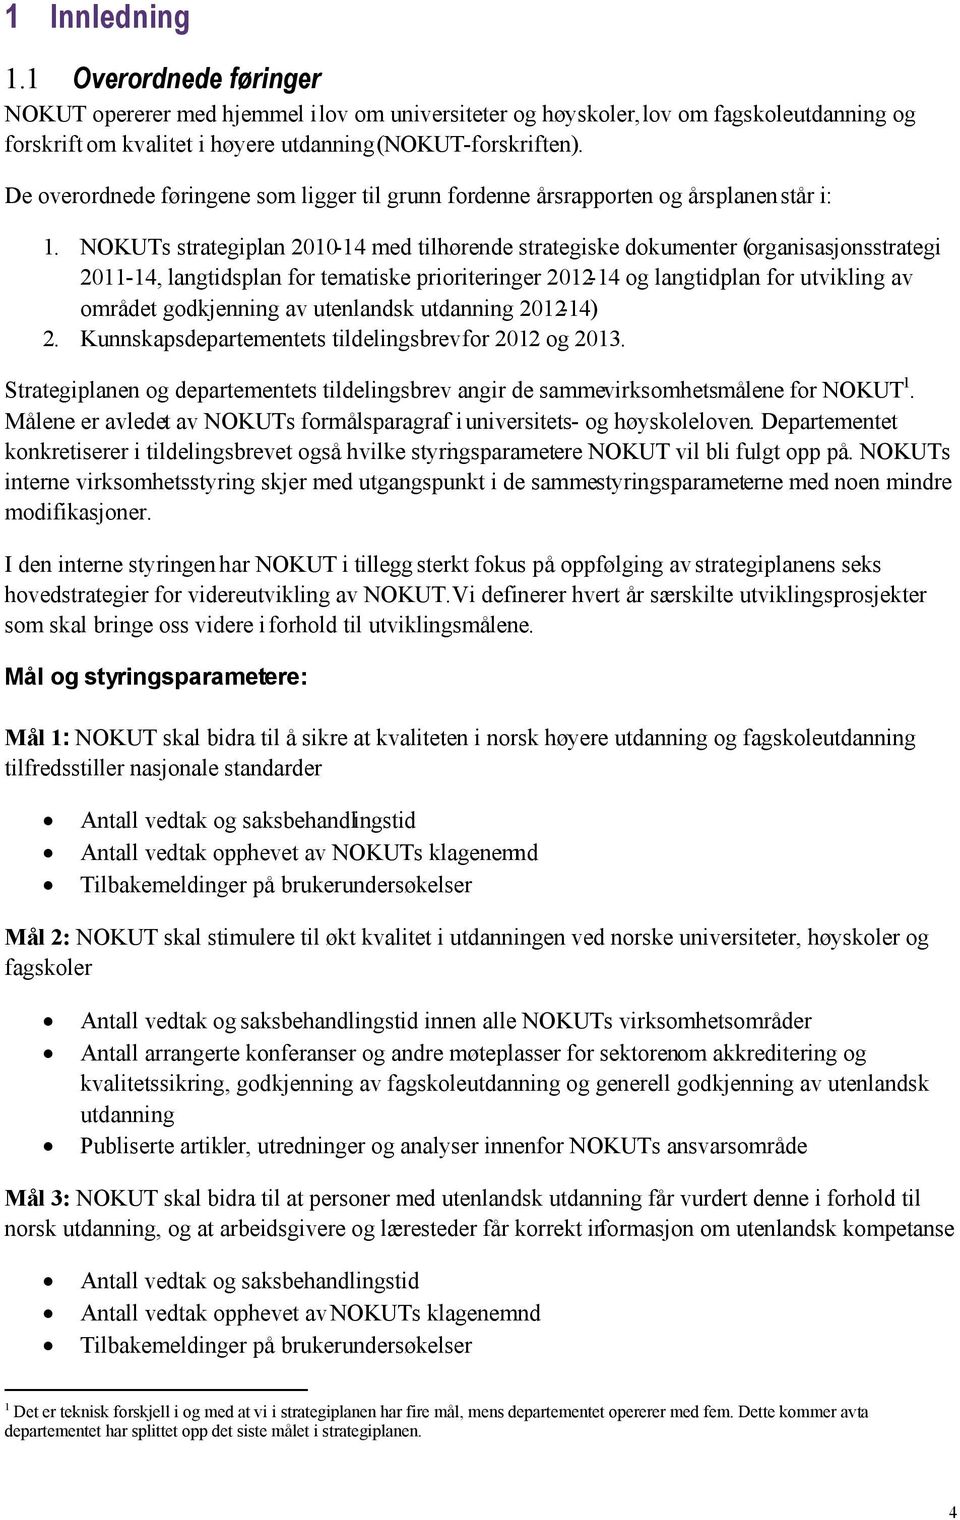 NOKUTs strategiplan 2010-14 med tilhørende strategiske dokumenter (organisasjonsstrategi 2011-14, langtidsplan for tematiske prioriteringer 2012-14 og langtidplan for utvikling av området godkjenning